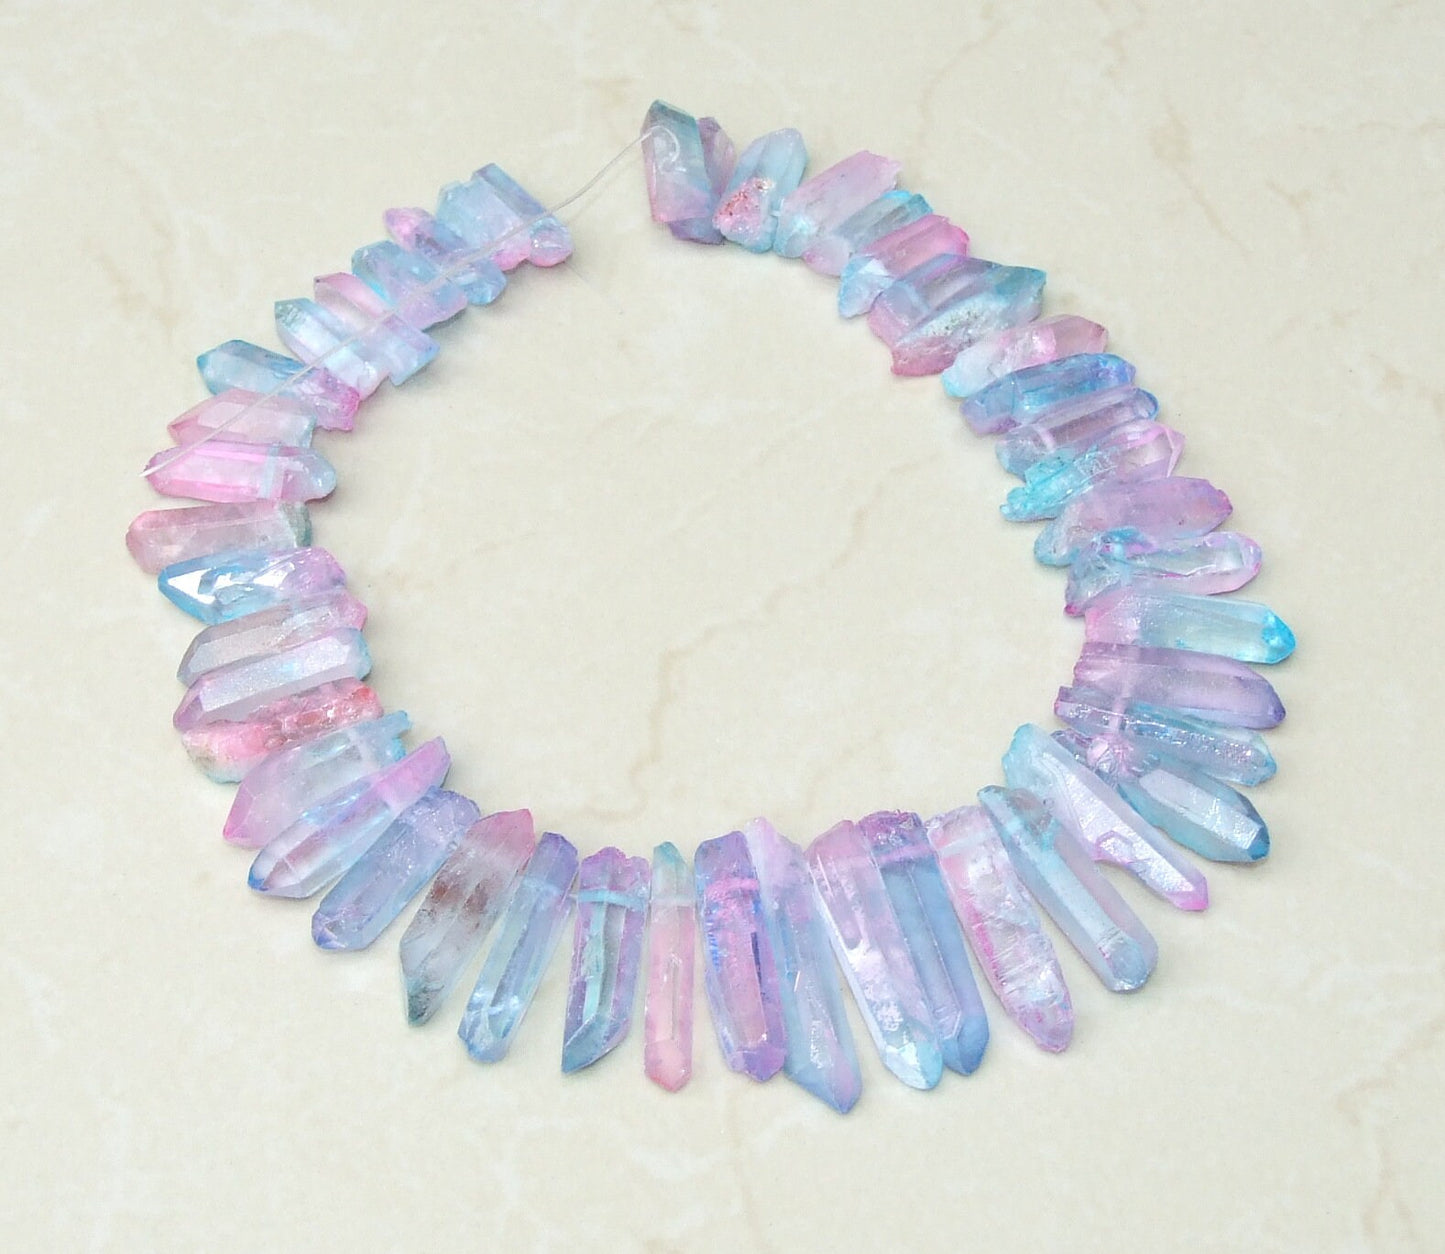 Light Blue & Pink Titanium Quartz Points, Quartz Crystal, Crystals Points, Raw Crystal Quartz Strand, Gemstones Beads - 20mm - 40+mm